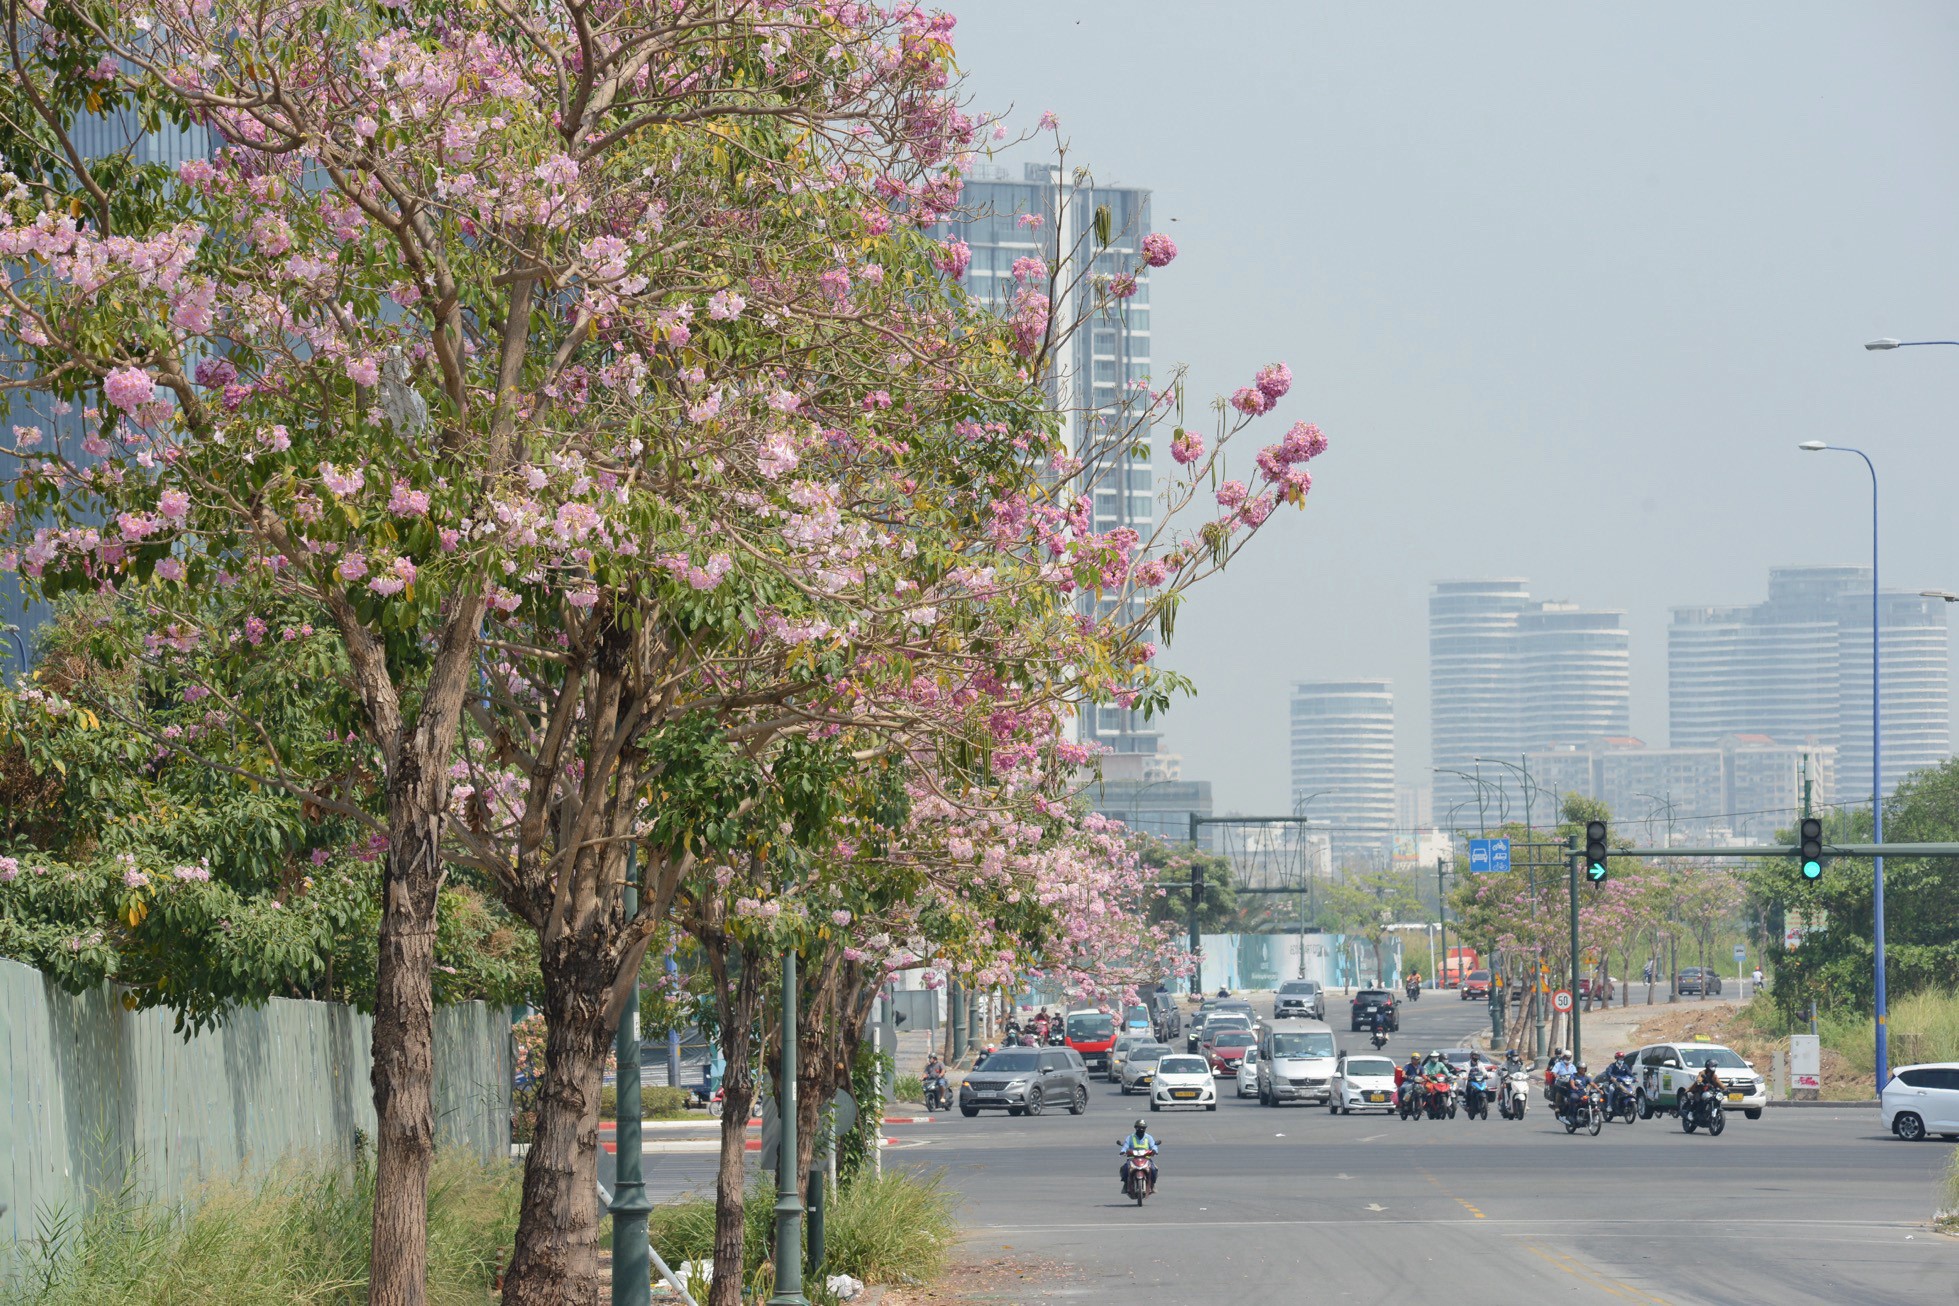 Nhiều người lưu thông trên đường không khỏi xốn xang khi thấy hoa kèn hồng khoe sắc trong nắng.